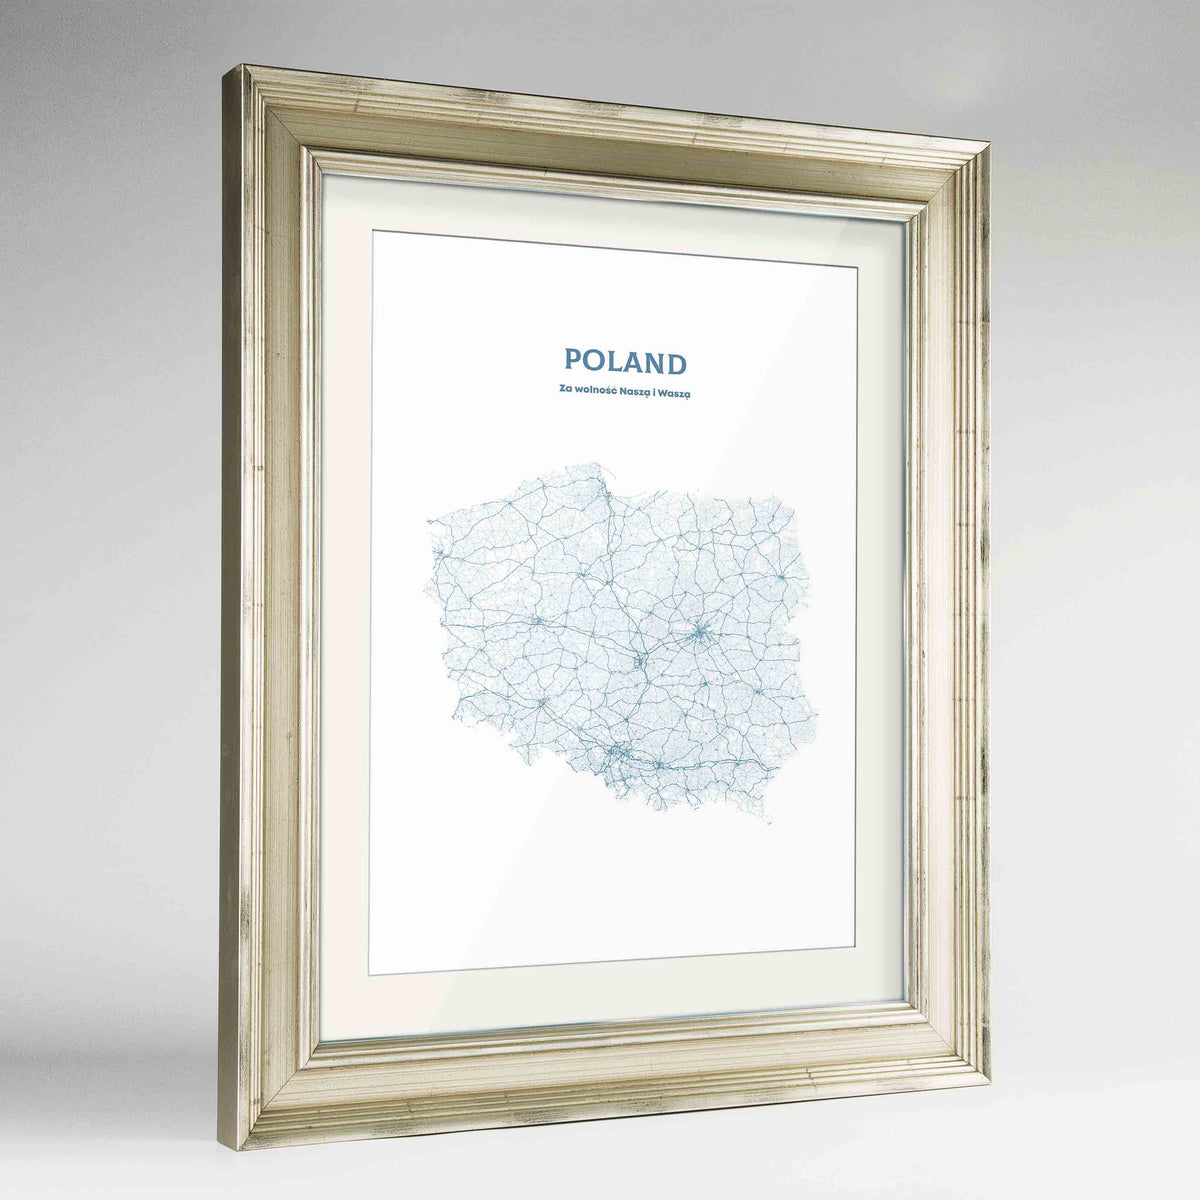 Poland - All Roads Art Print - Framed